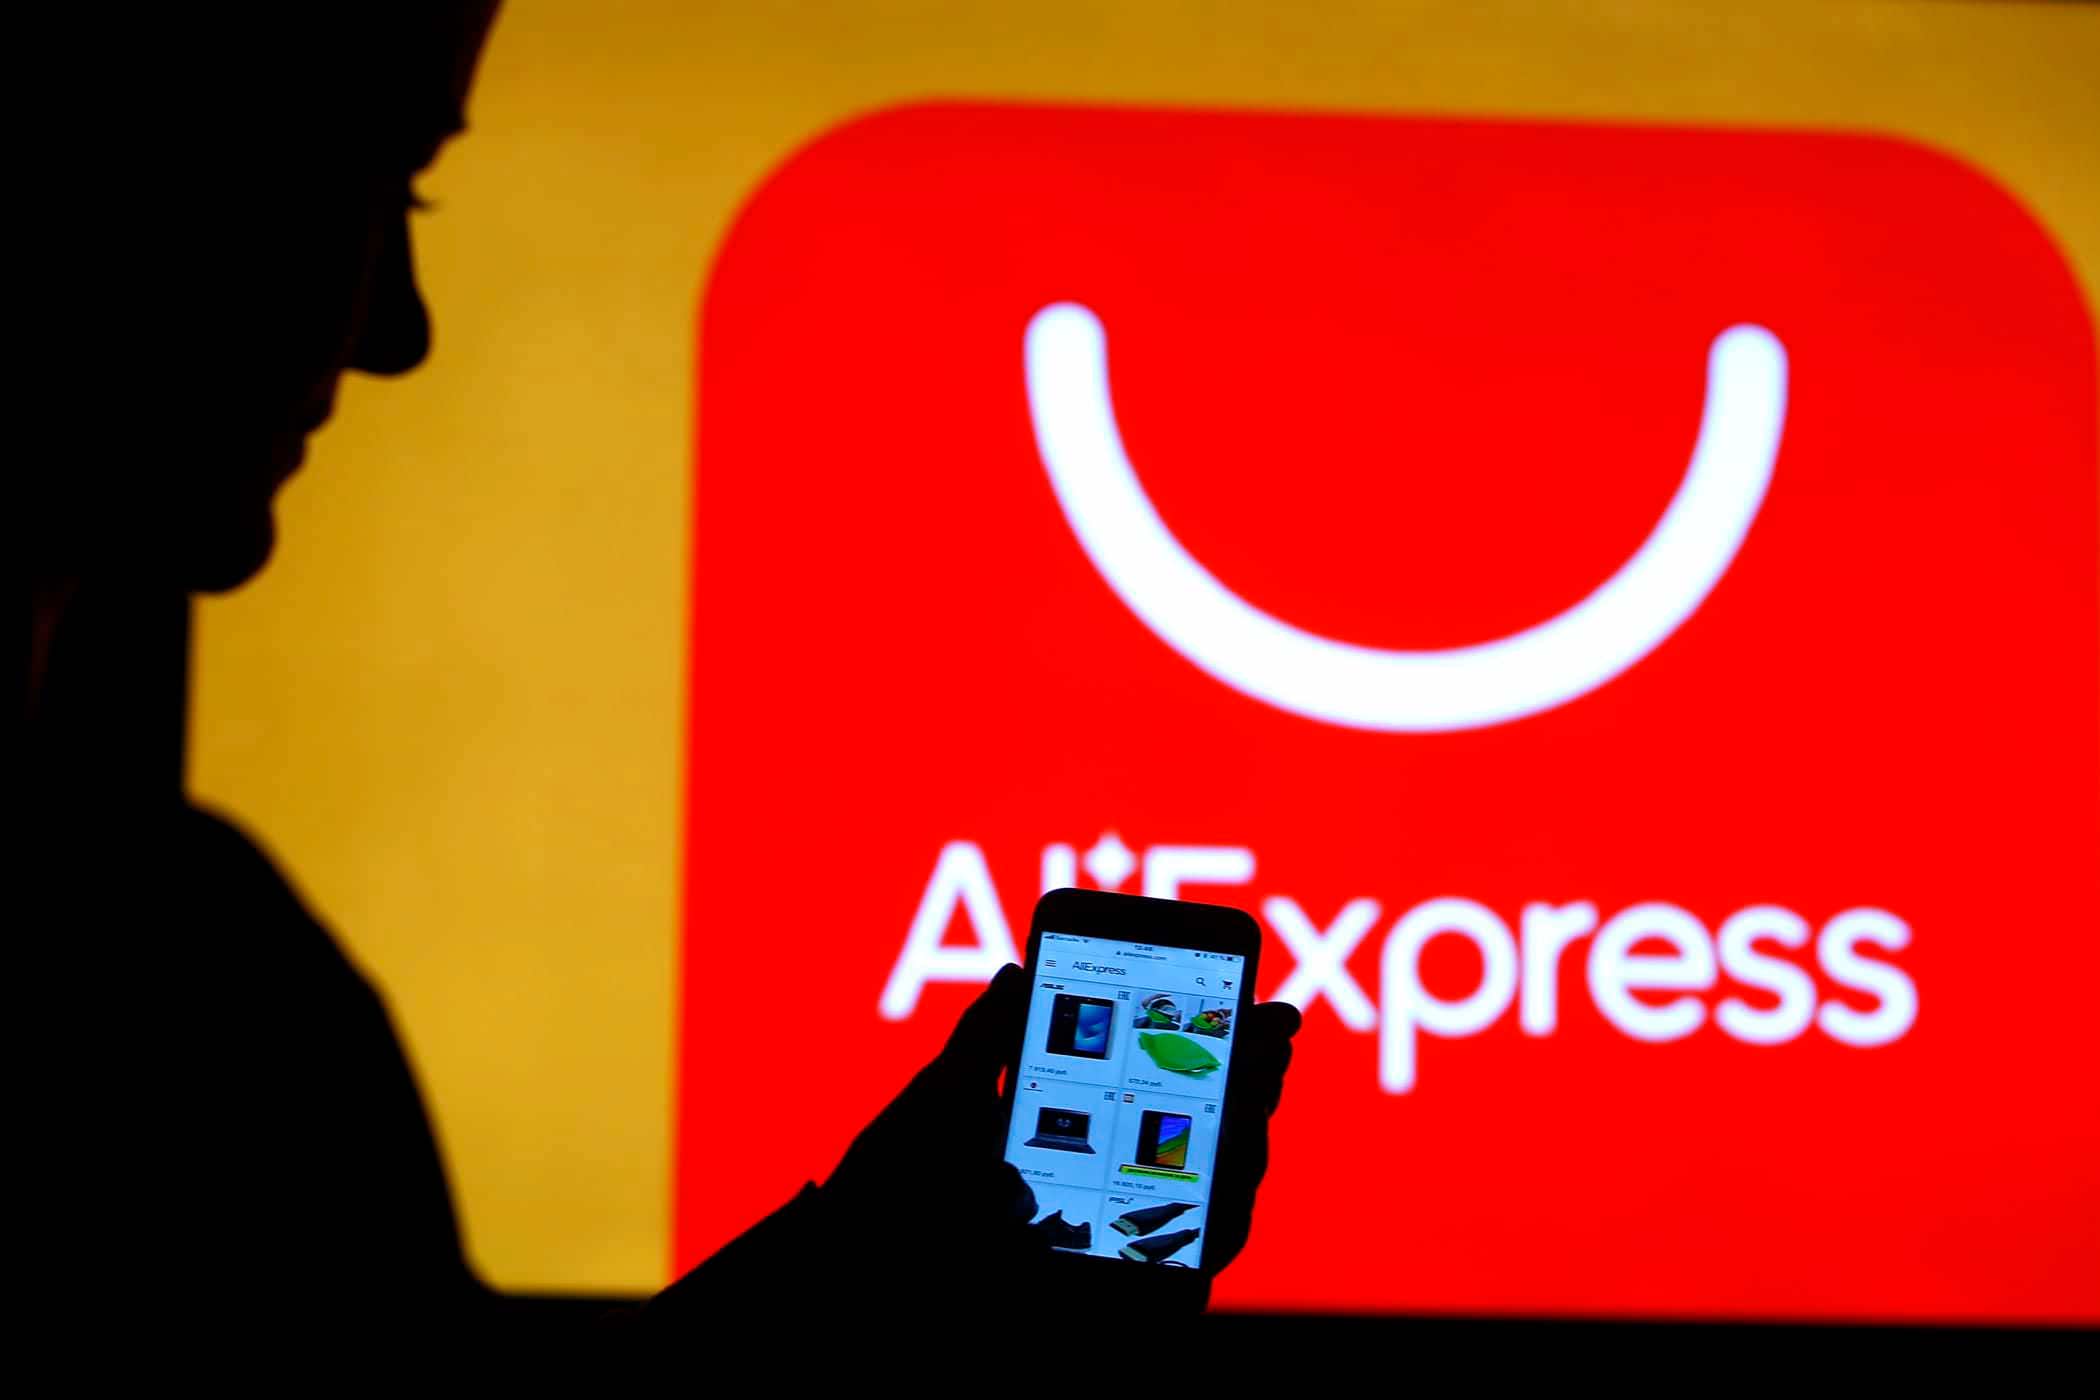 Самозанятые россияне смогут открыть собственные магазины на AliExpress